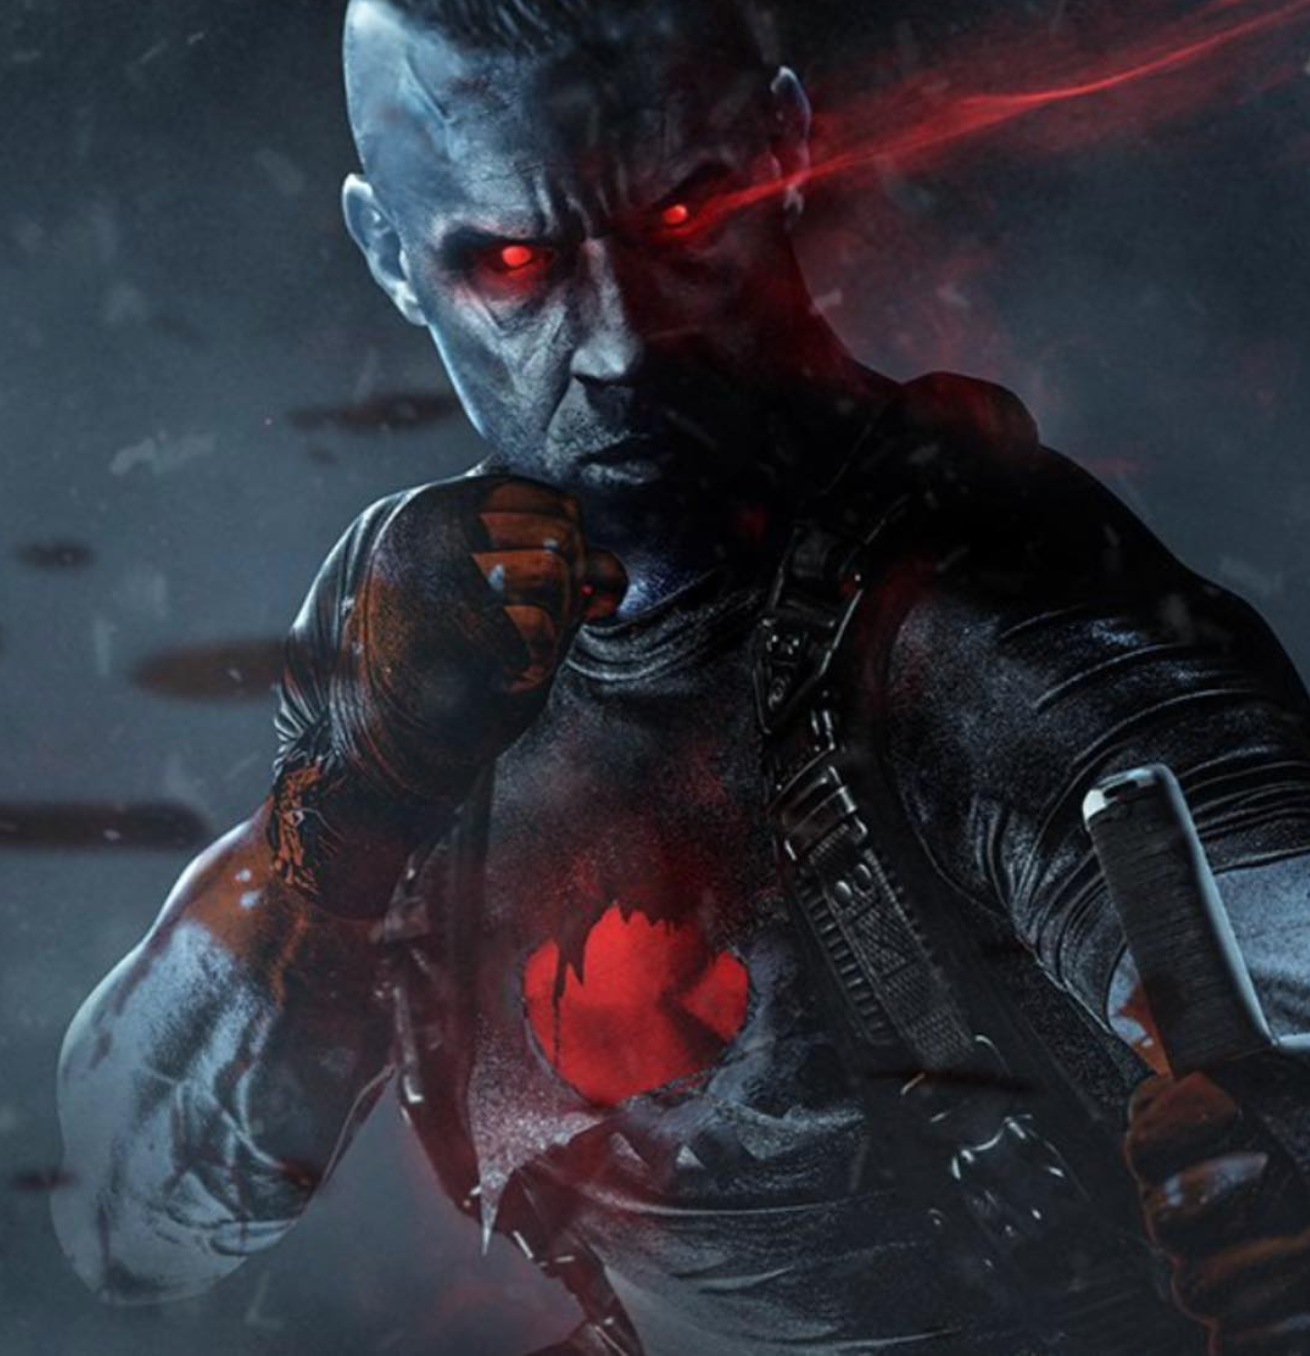 Primera imagen de Vin Diesel como Bloodshot, nuevo cómic al cine